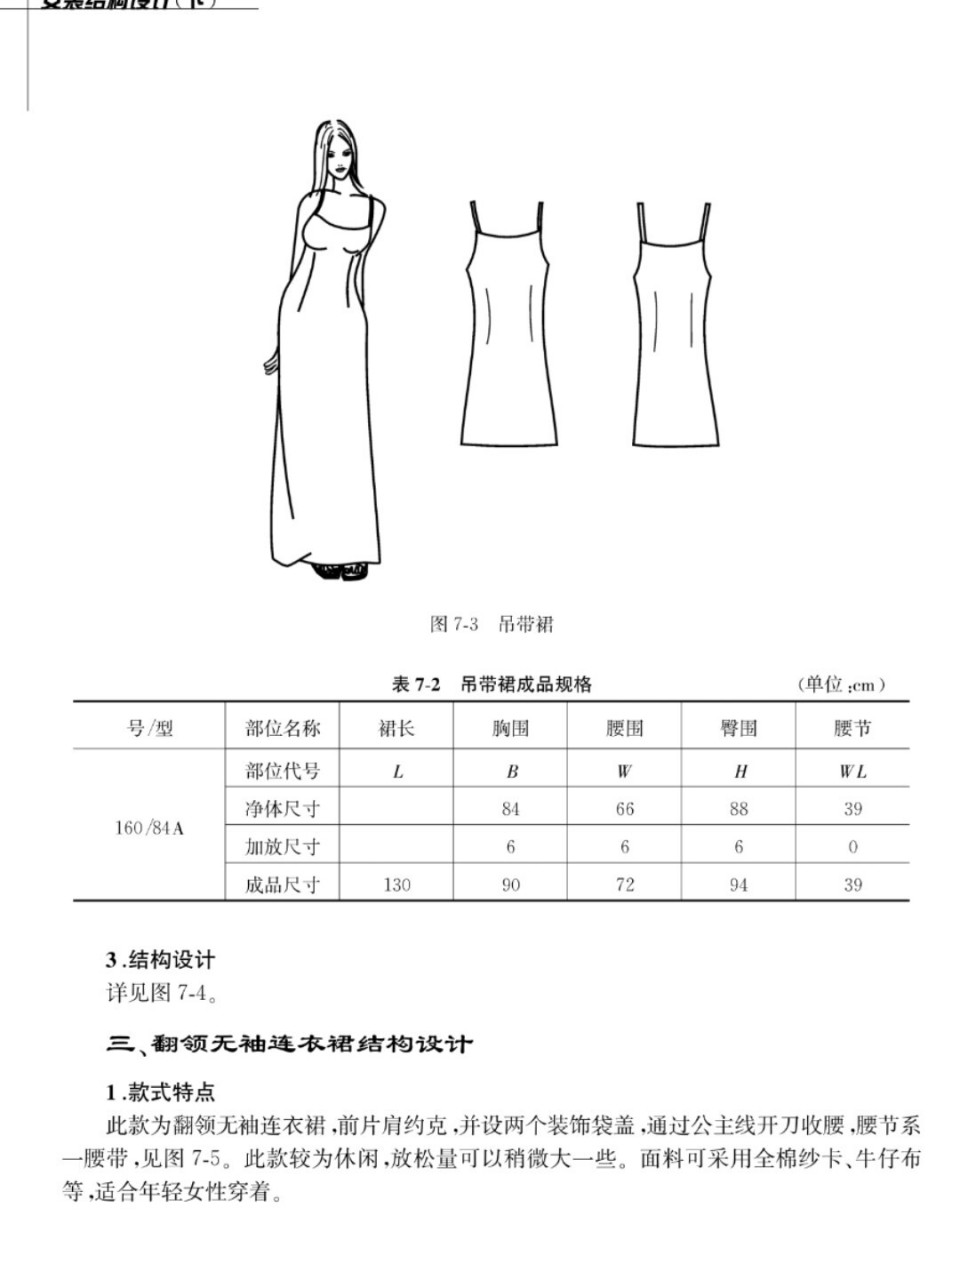 简单连衣裙的裁剪方法图片